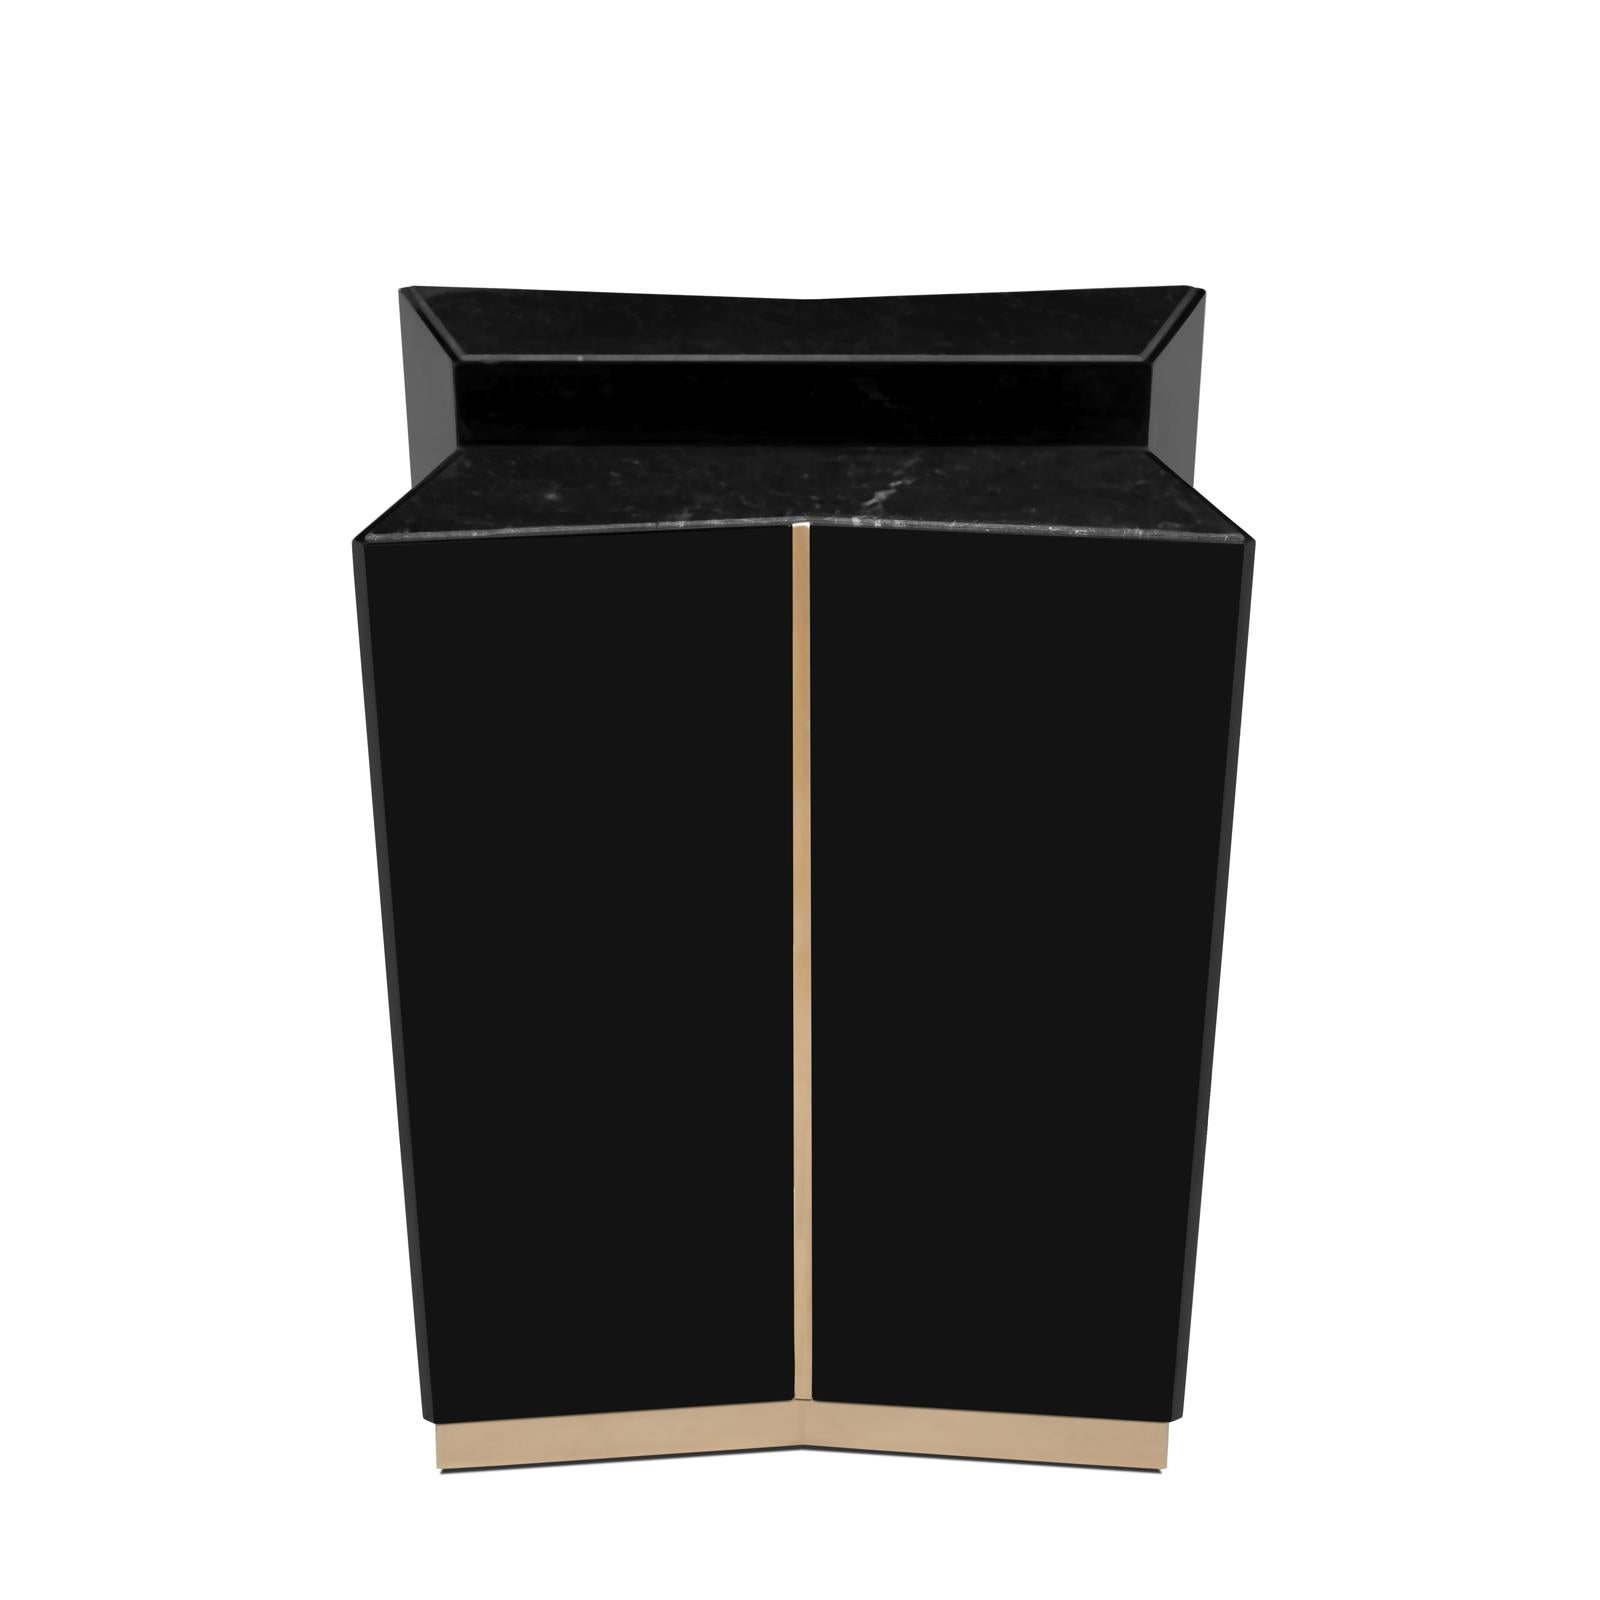 Beistelltisch Ambassador mit zwei schwarzen Marmorplatten,
Marmor Nero Marquina. Mit dezent vergoldetem, poliertem
sockel und Liniendetails aus Messing. Struktur in schwarz lackiert
massivholz.